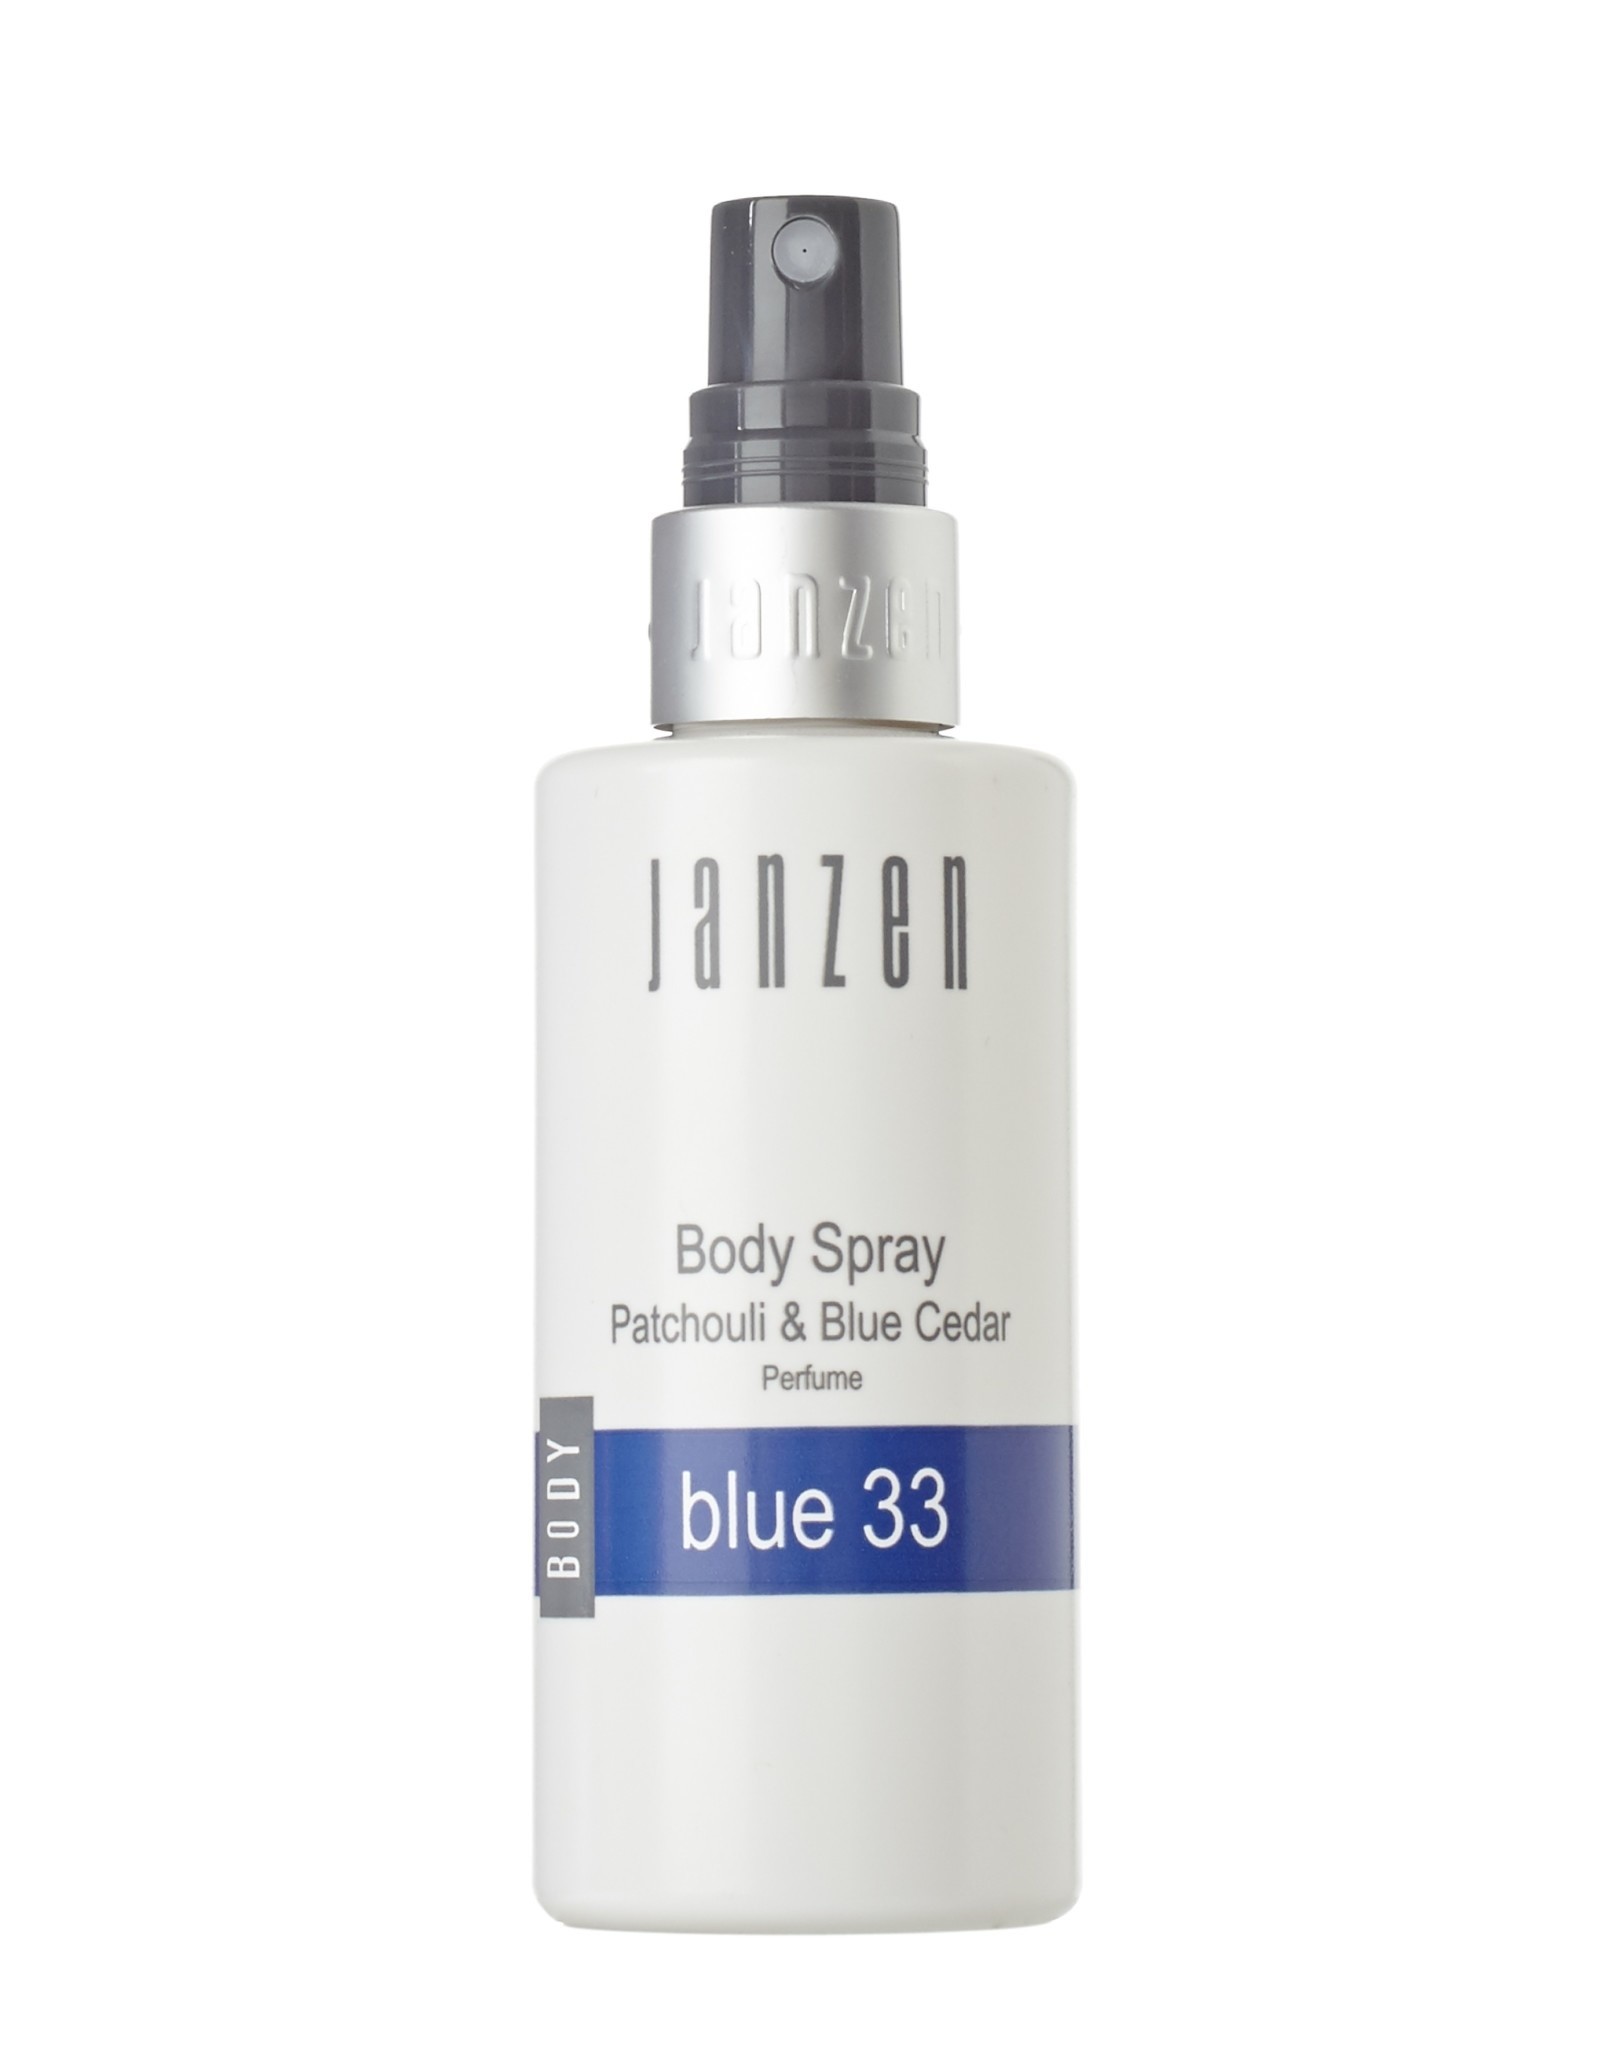 JANZEN Body Spray Blue 33 100ml - JANZEN